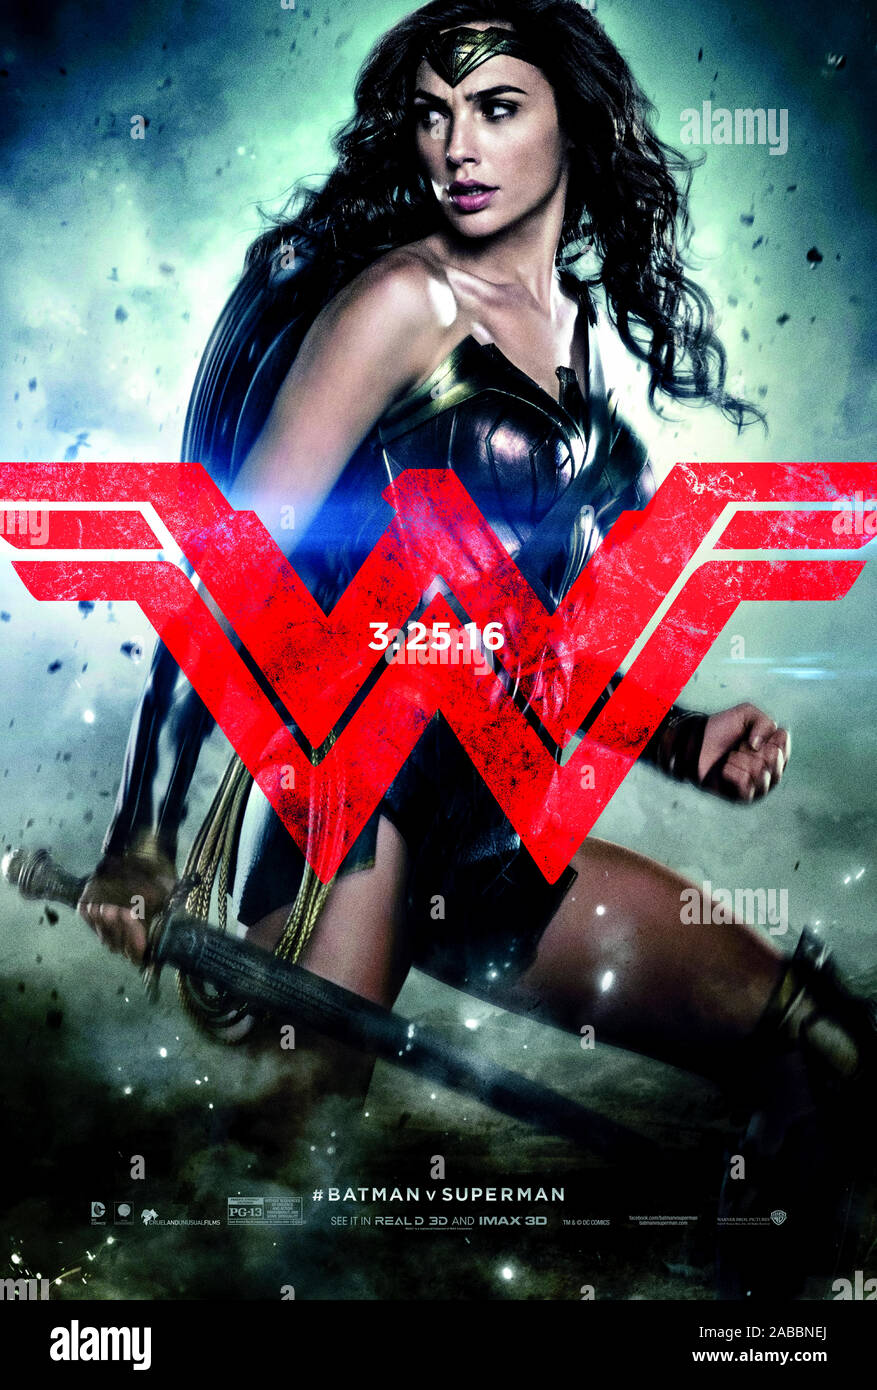 Wonder Woman gespielt von Gal Gadot aus Batman v Superman: Morgenröte der Gerechtigkeit (2016) von Zack Snyder. Lex Luthor gruben Gotham Dark Knight gegen Metropolis Mann aus Stahl. Stockfoto